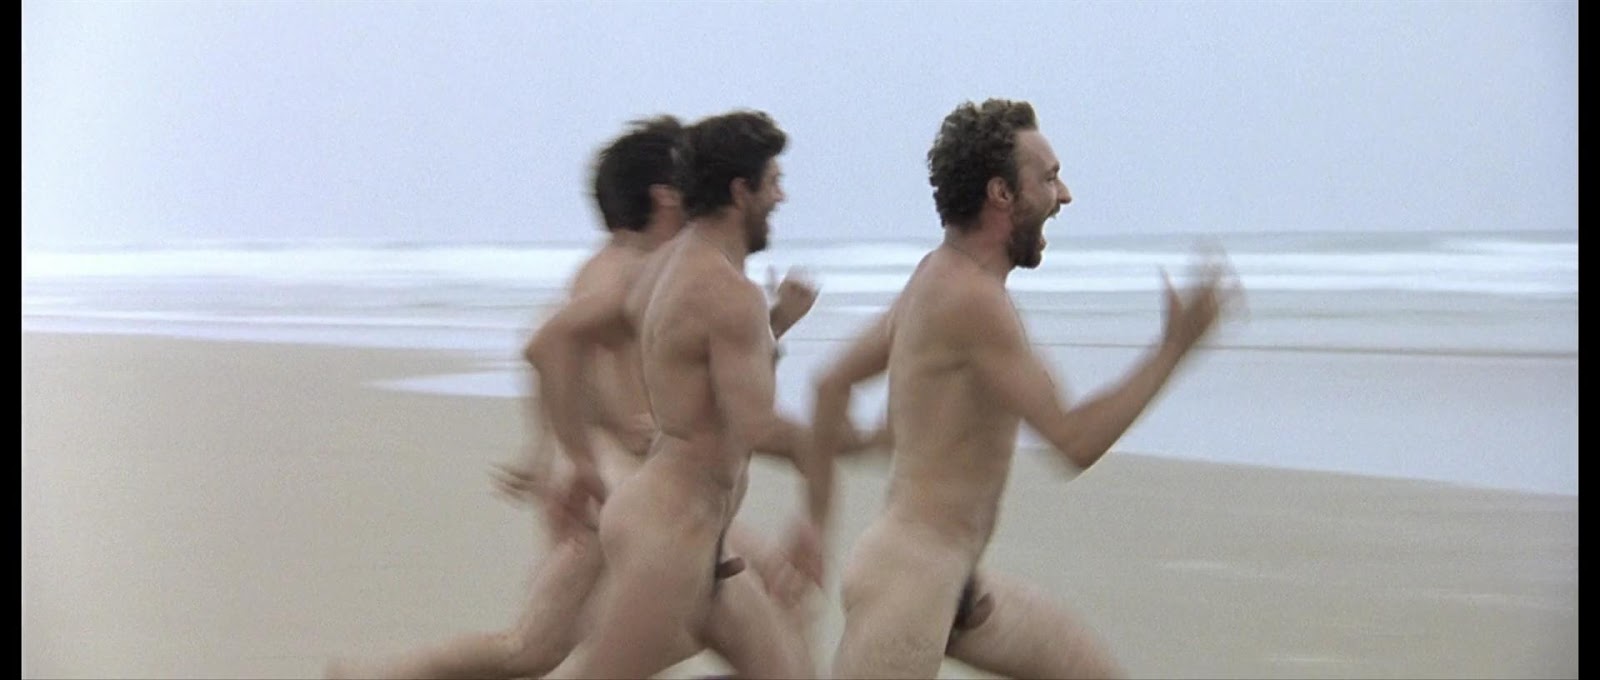 Nude men running